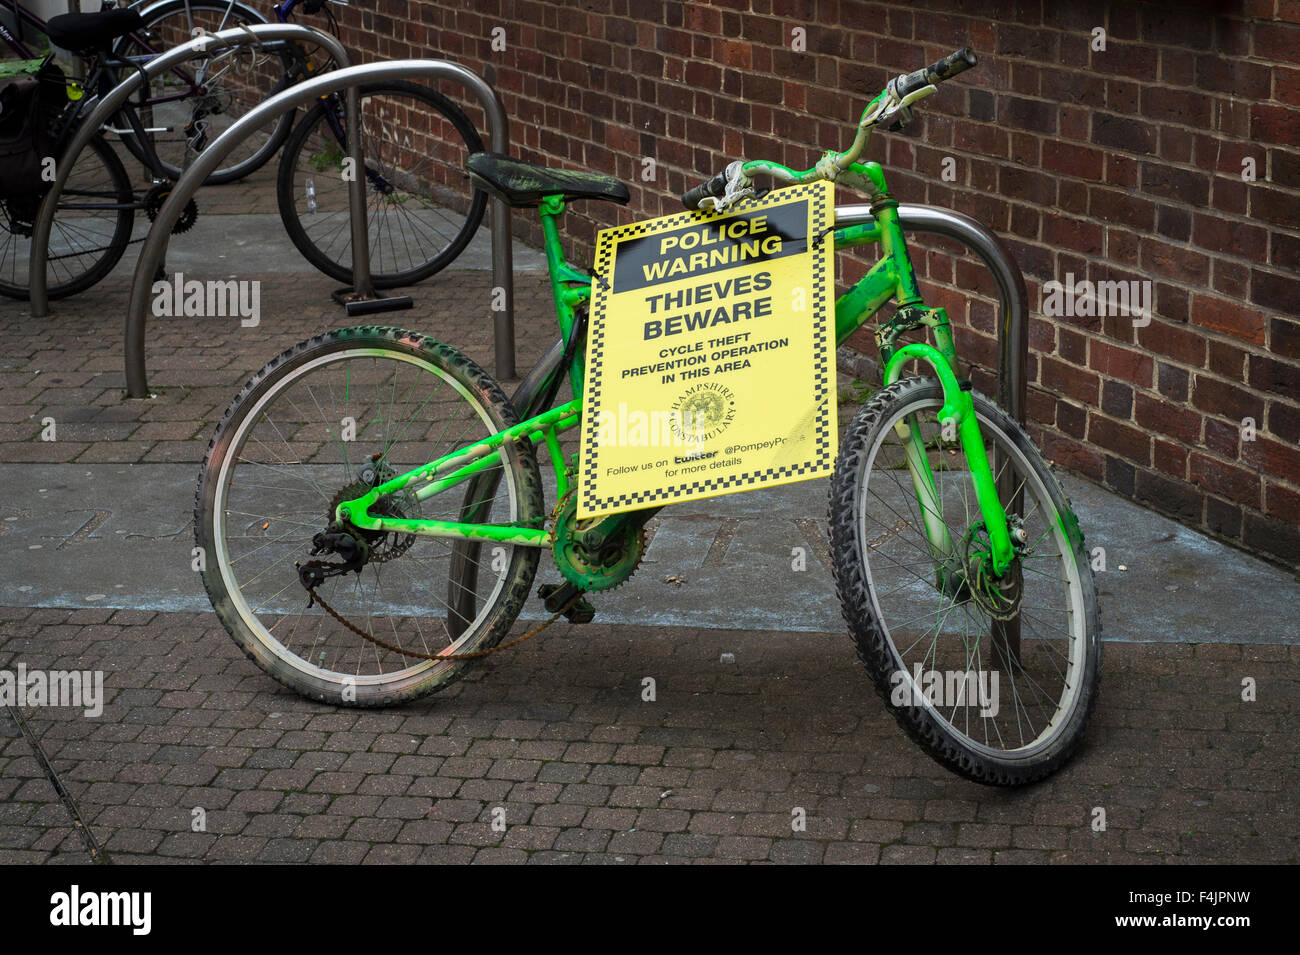 Fahrrad mit einem Polizei Warnung Vorsicht Diebe Schild angebracht. Stockfoto